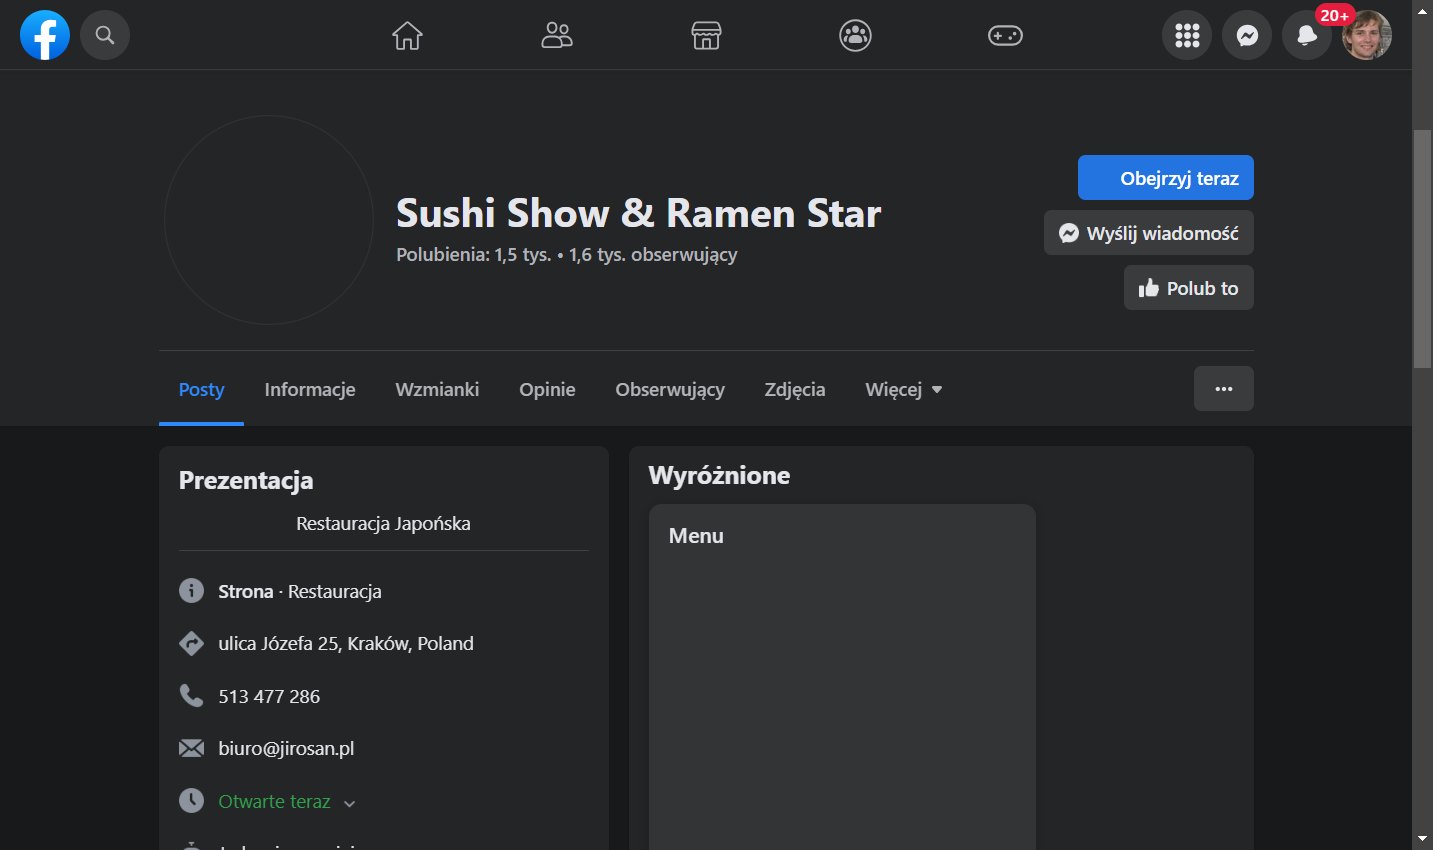 Sushi Show & Ramen Star